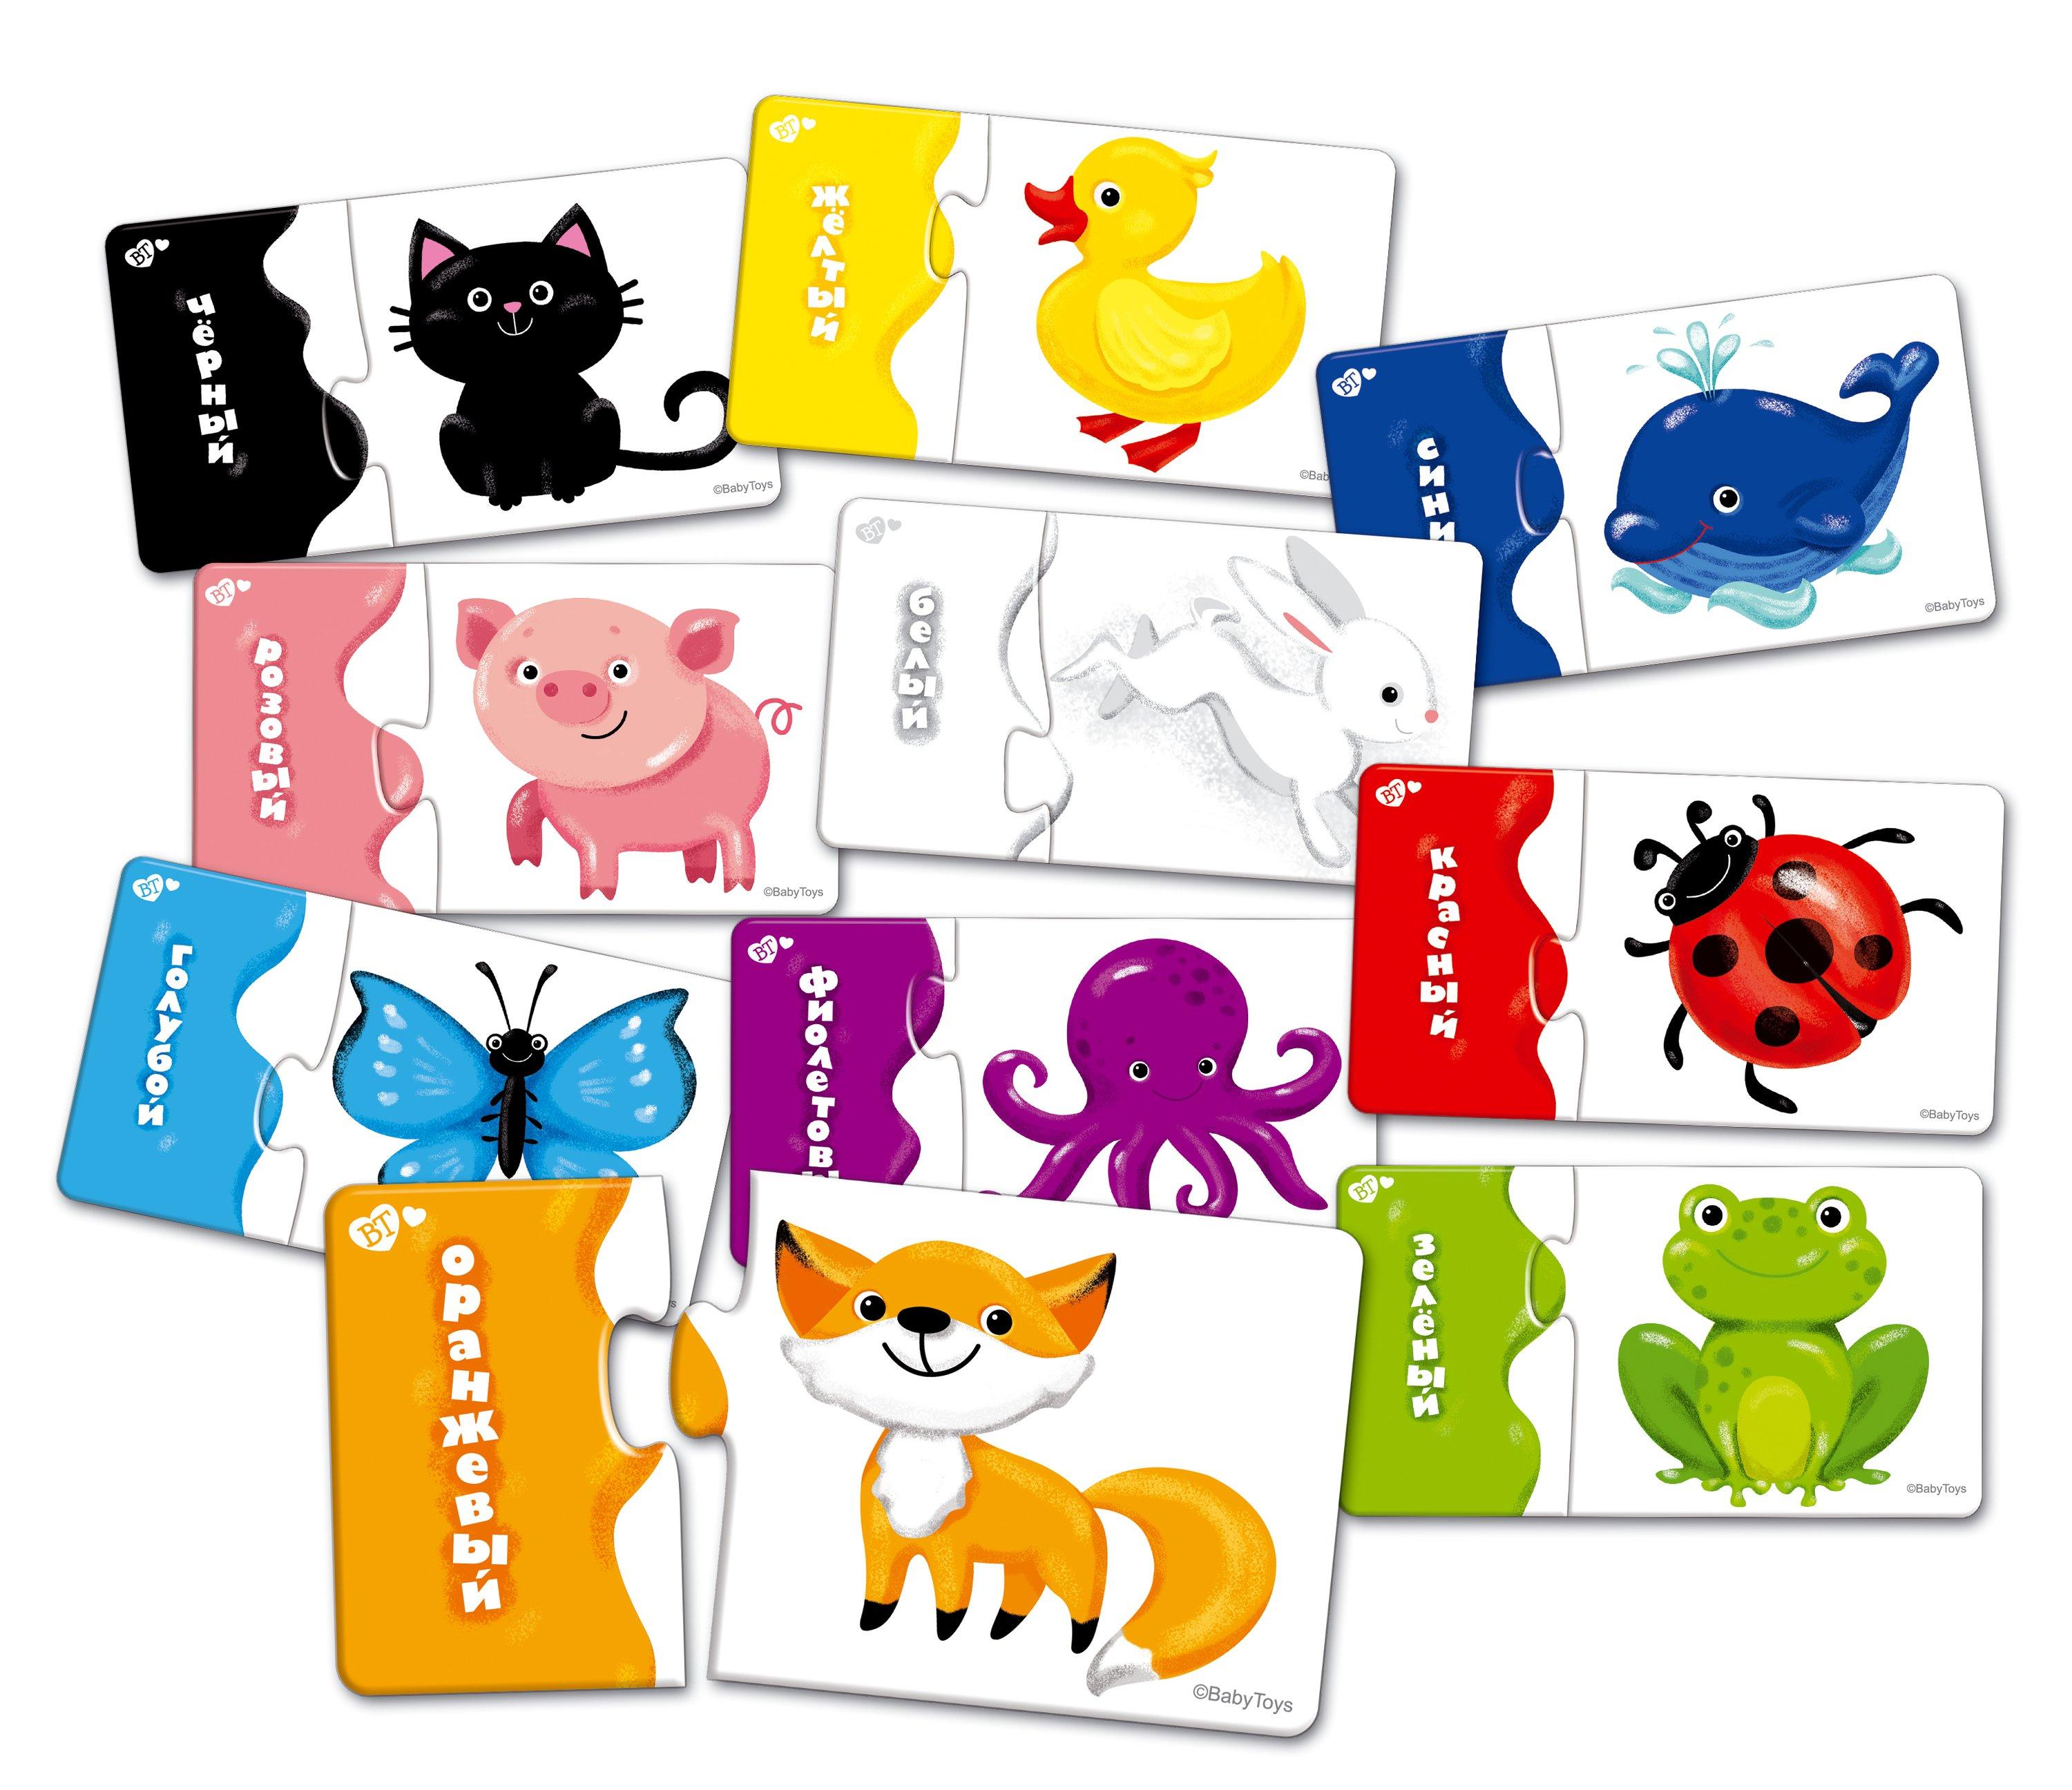 Montessori  Puzzle double couleurs amusantes avec 10 images, 20 pièces 